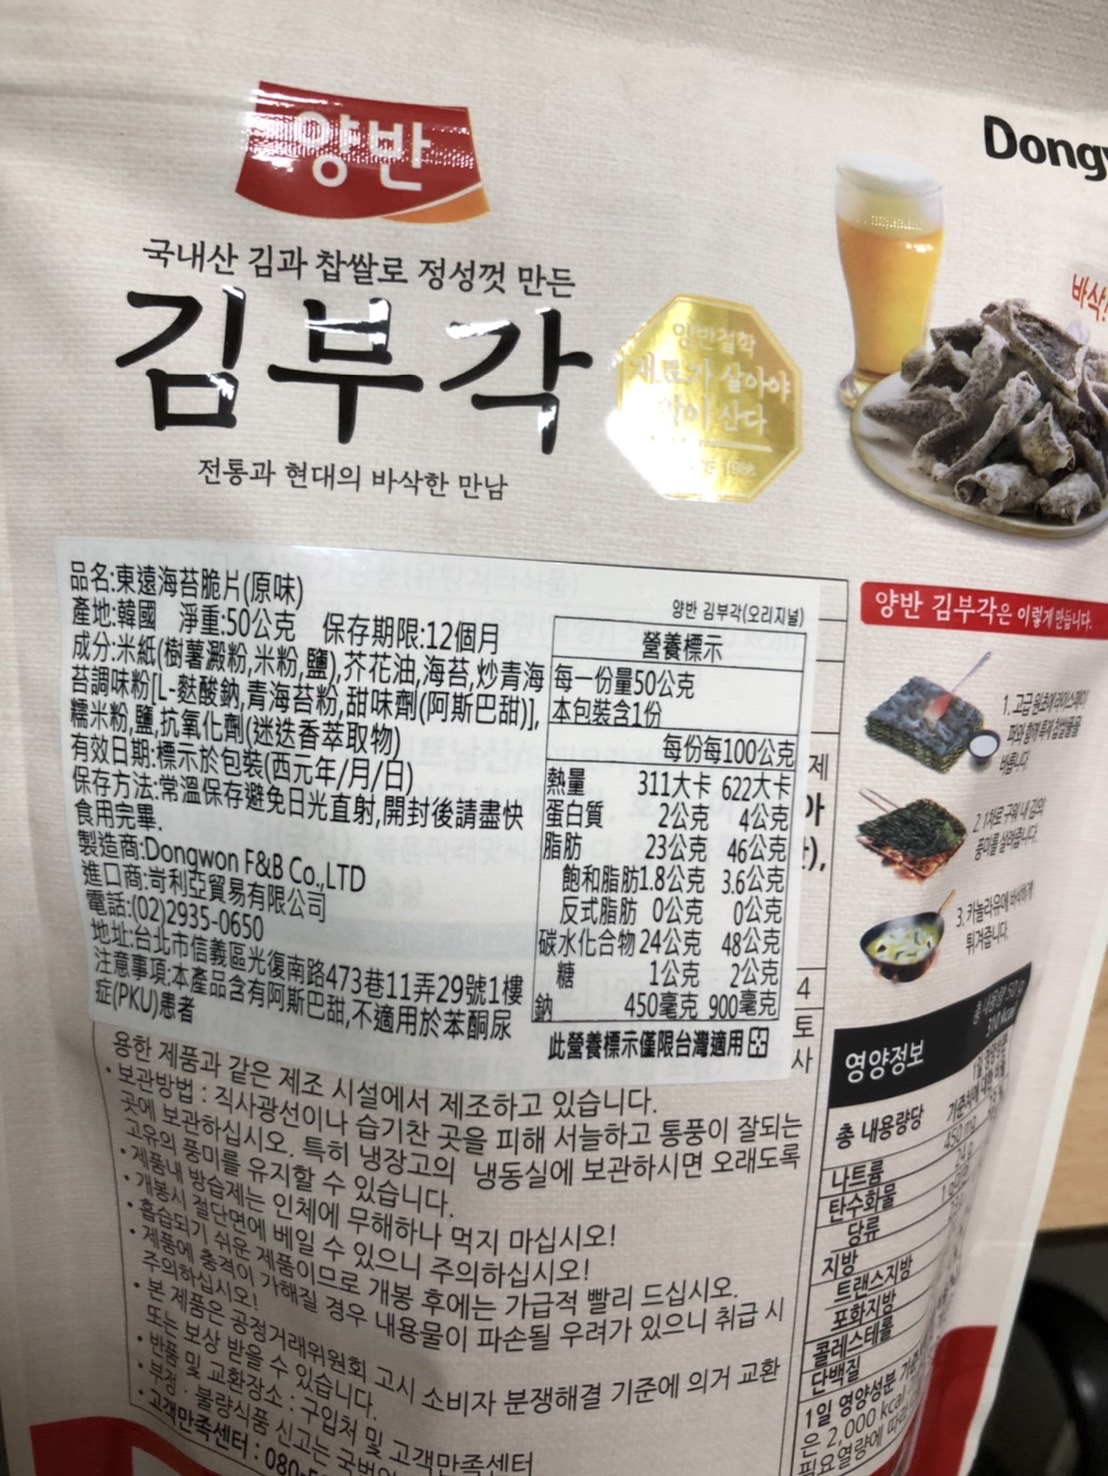 【東遠】韓國熱銷海苔脆餅50g 原味／蒜味／蝦味